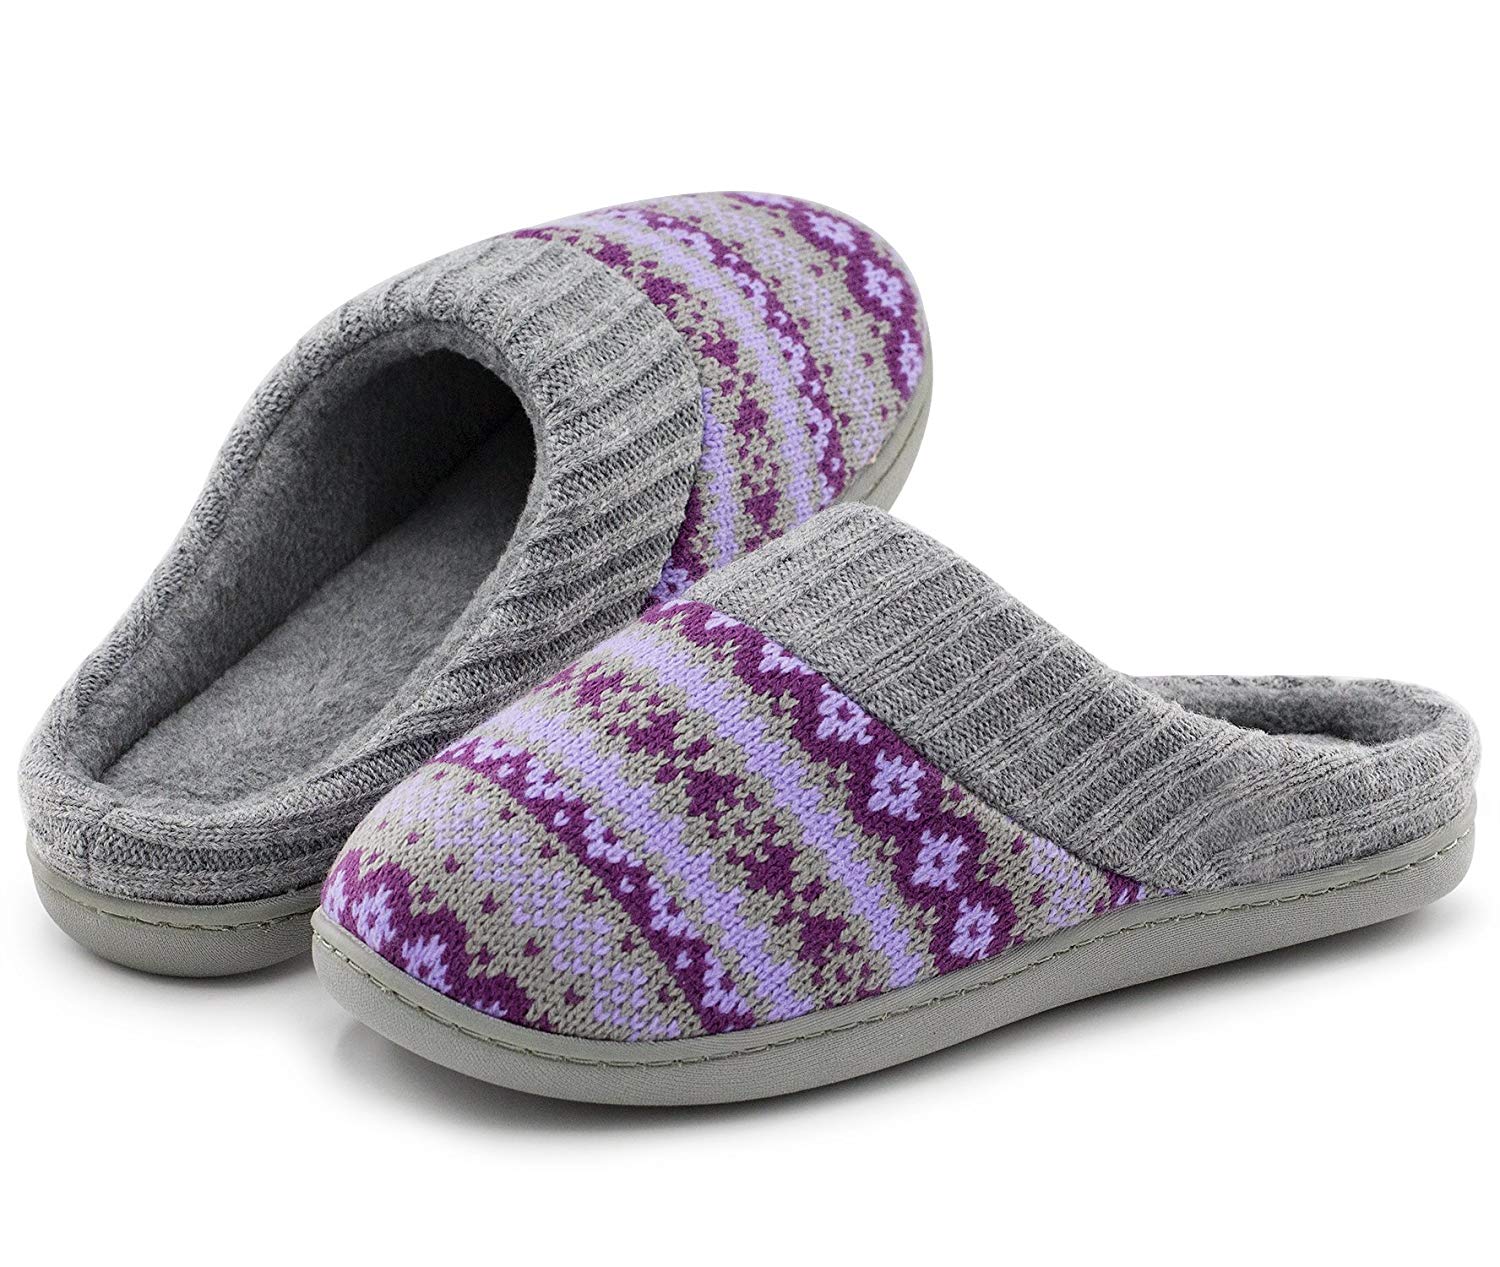 rockdove women's memory foam slippers